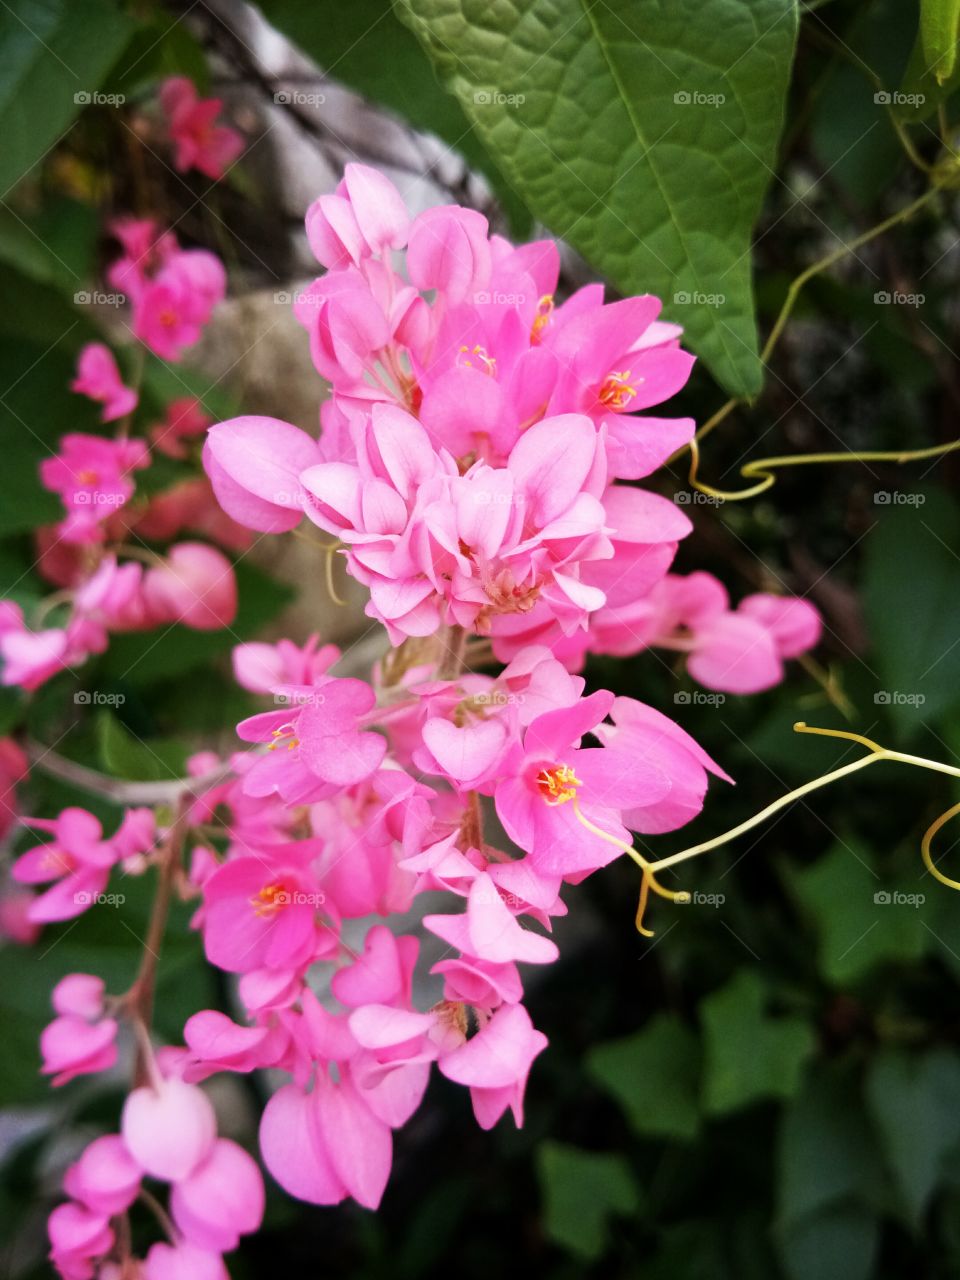 phra pink
flowerr